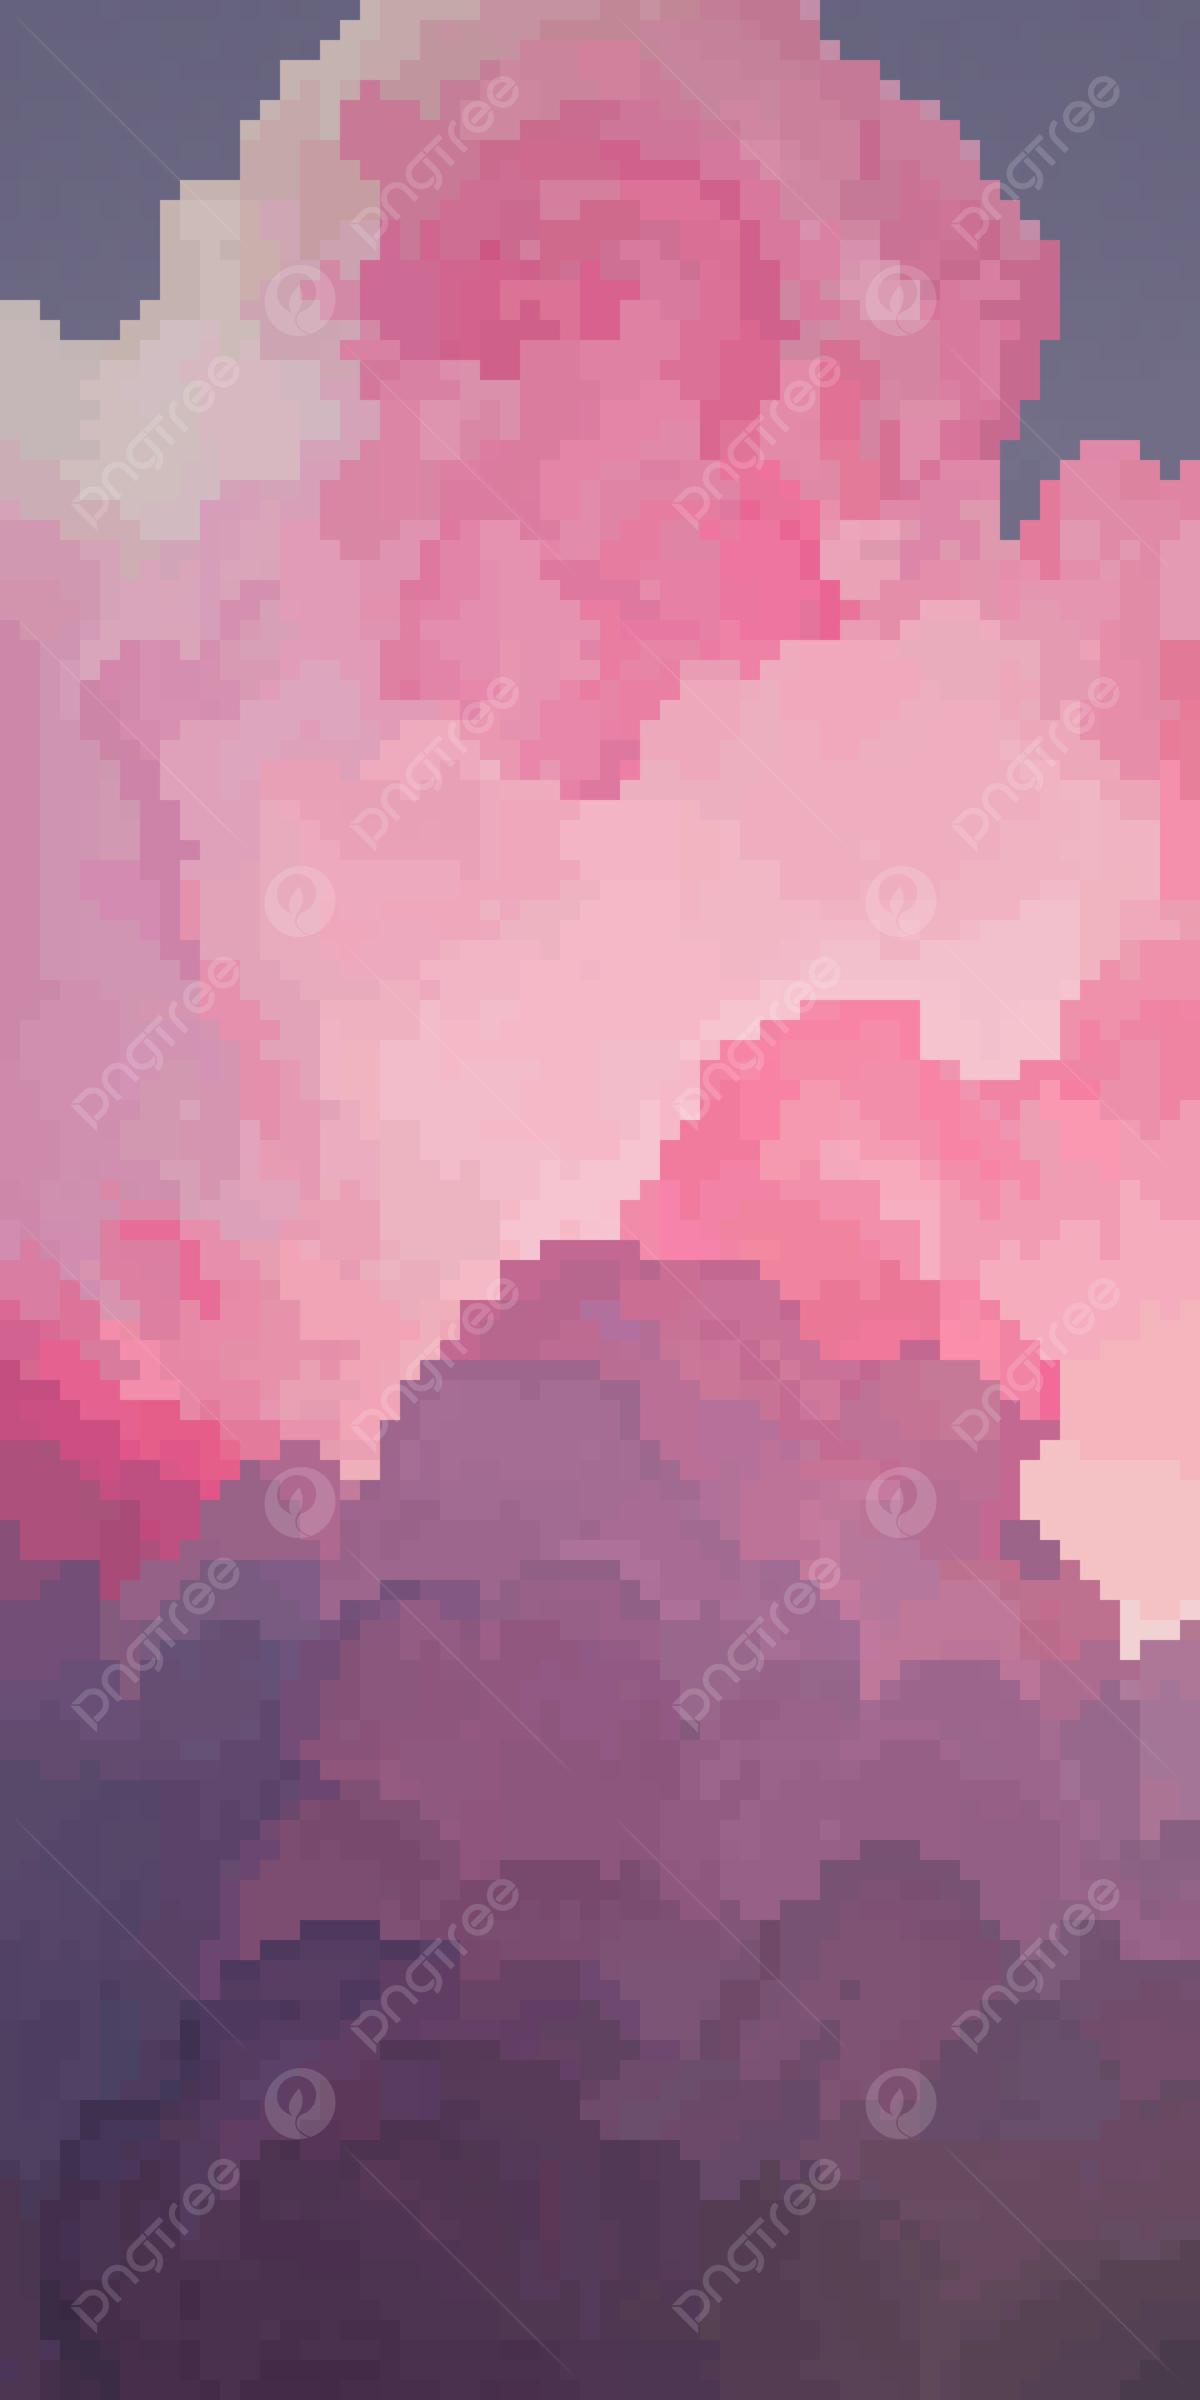 Небо пейзаж в пиксельном стиле мобильный телефон обои фон Обои Изображение  для бесплатной загрузки - Pngtree